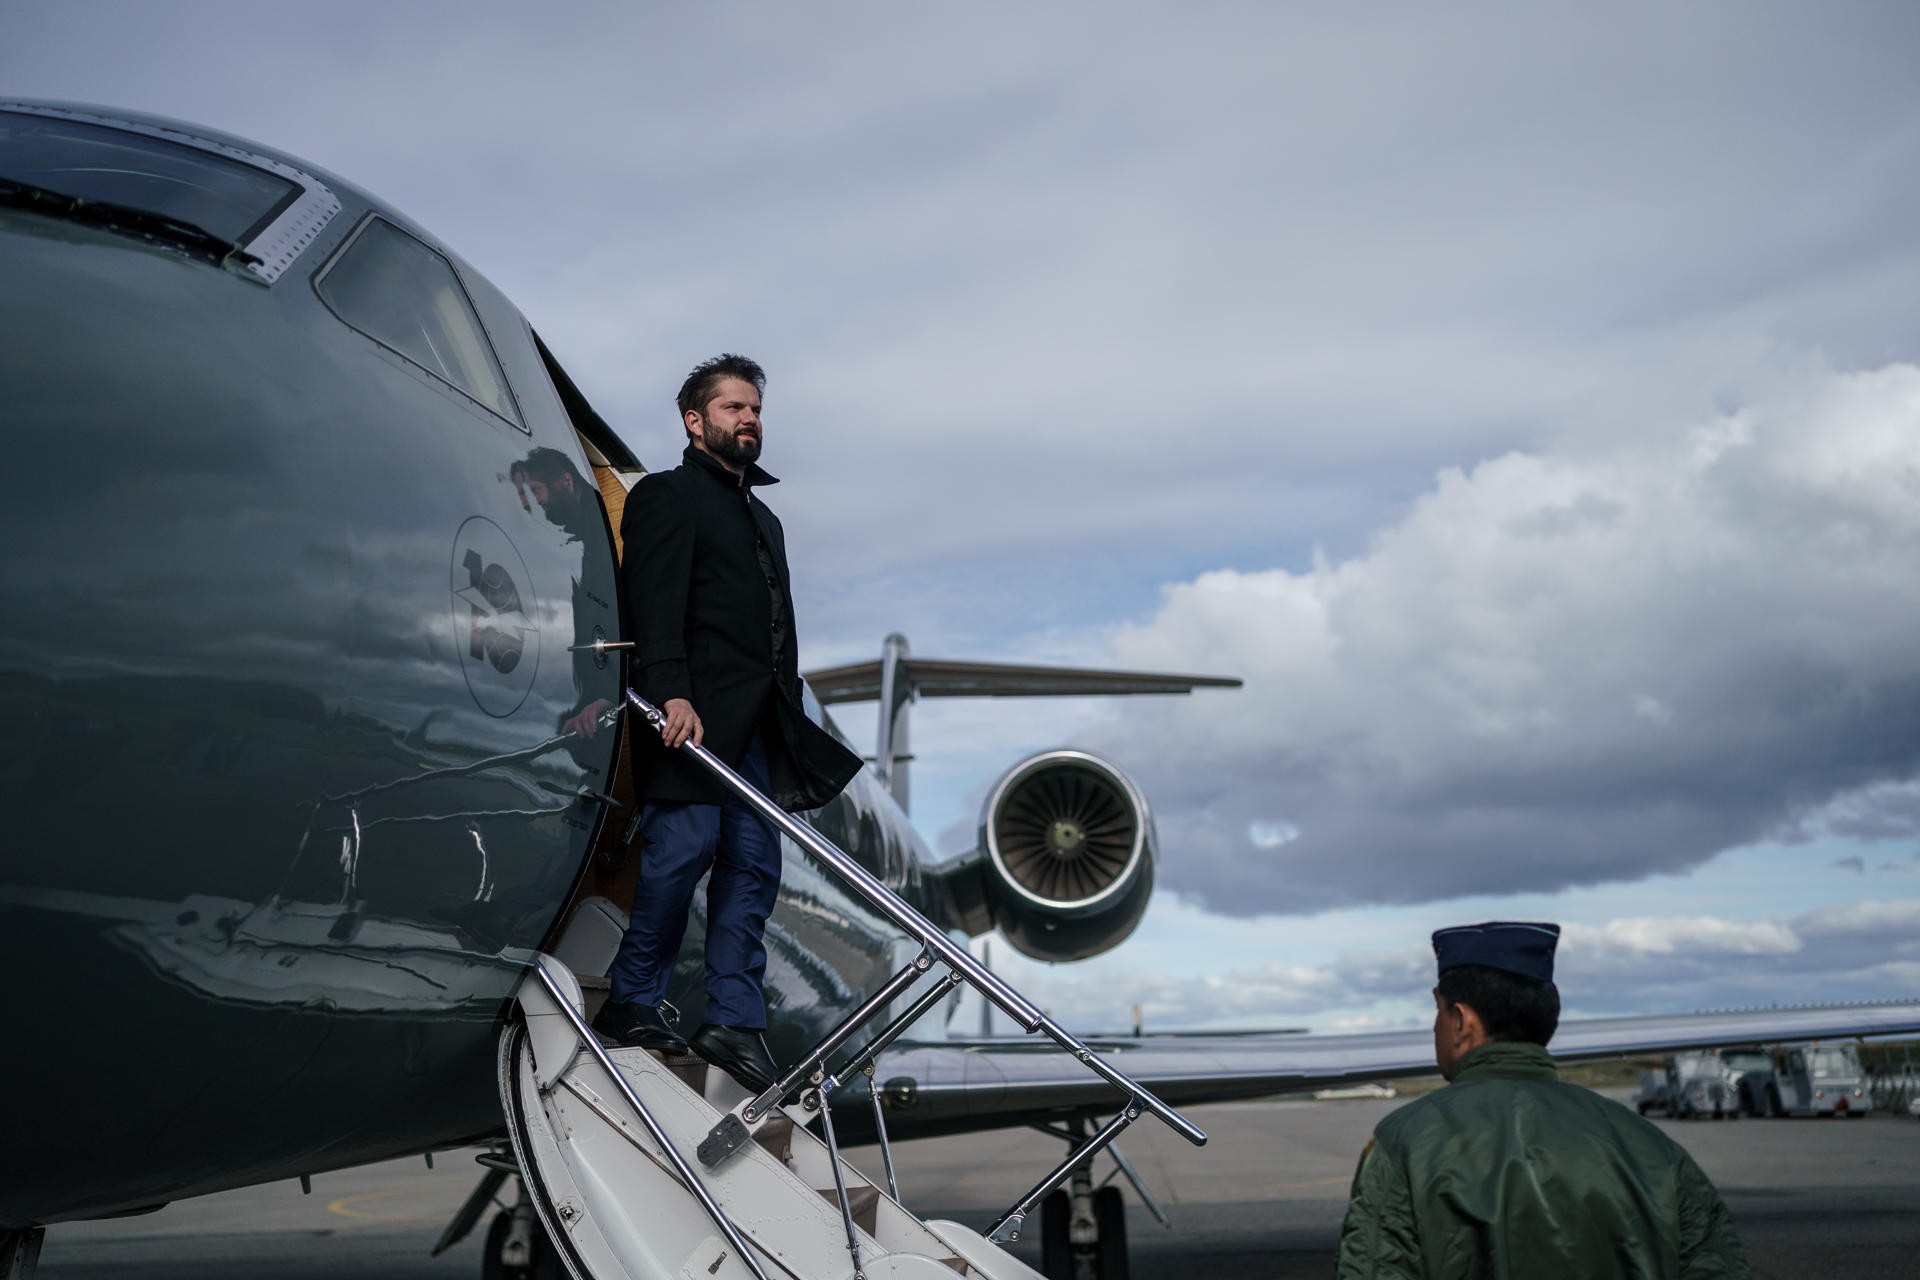 Fotografía cedida por la Presidencia de Chile que muestra al mandatario Gabriel Boric mientras baja de su avión tras aterrizar hoy en Punta Arenas (Chile). EFE/ Presidencia Chile